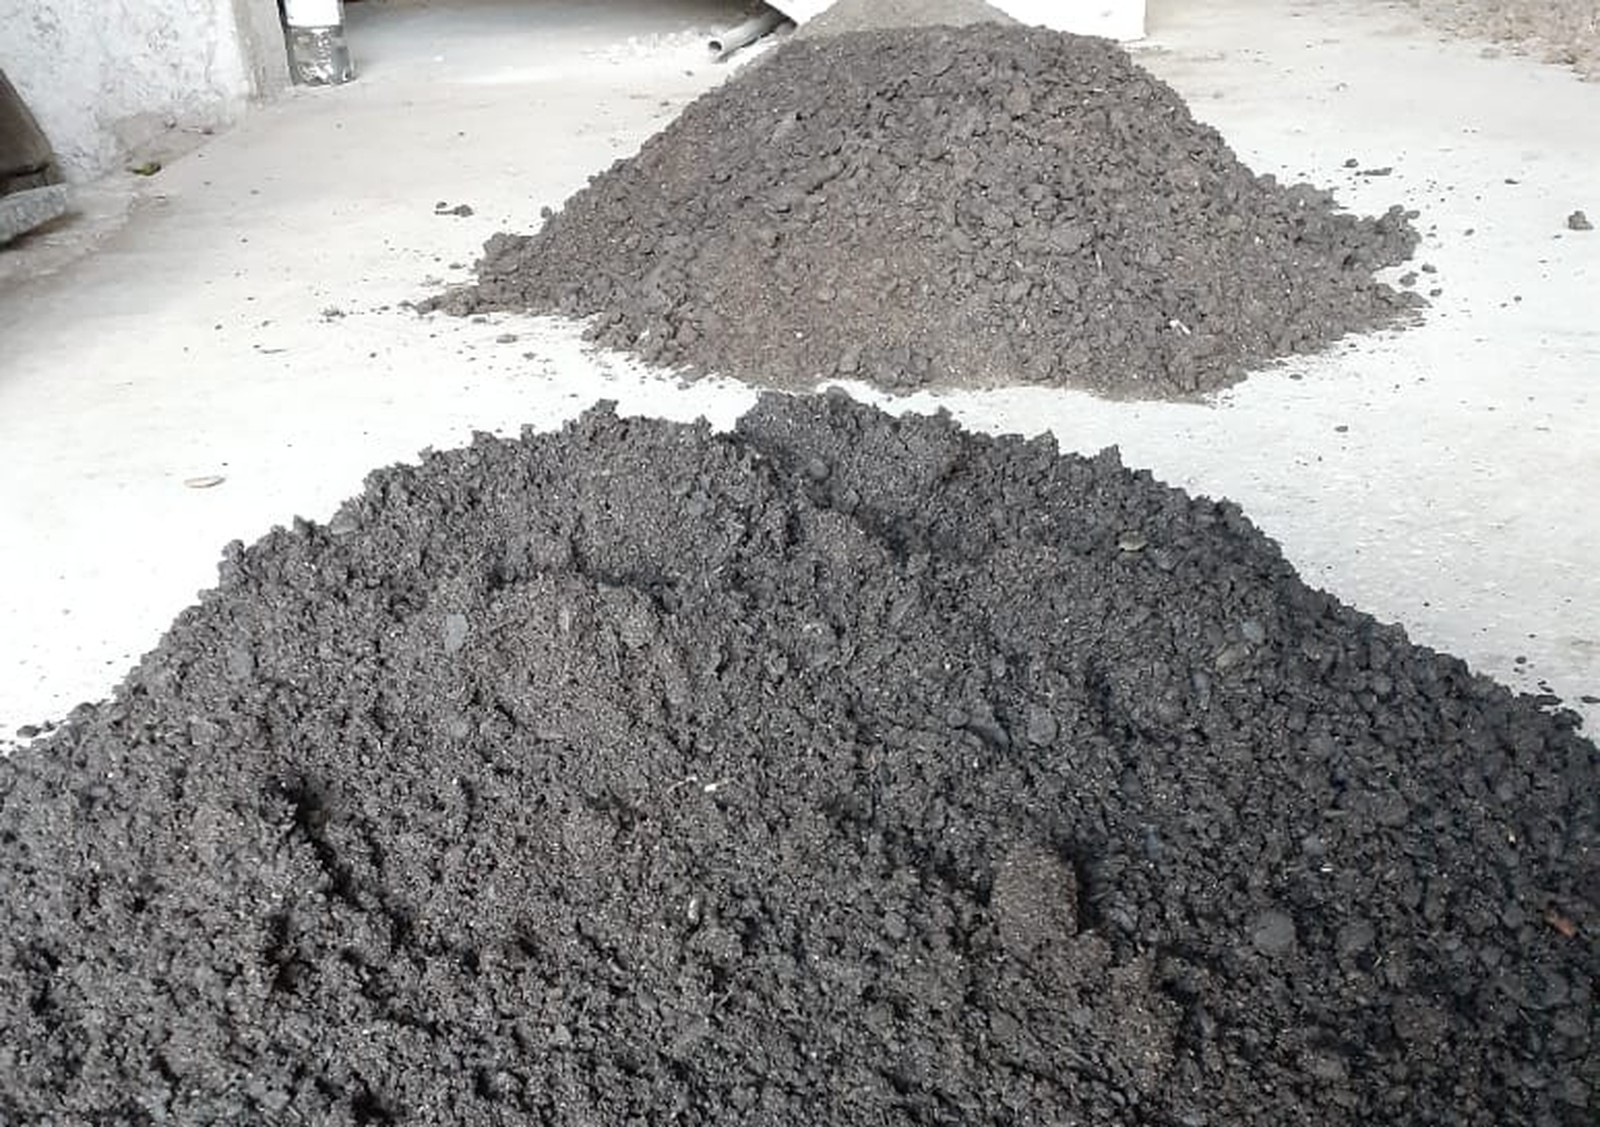 O carvão pode ser misturado com  terra e colocado nas plantas, como uma espécie de adubo